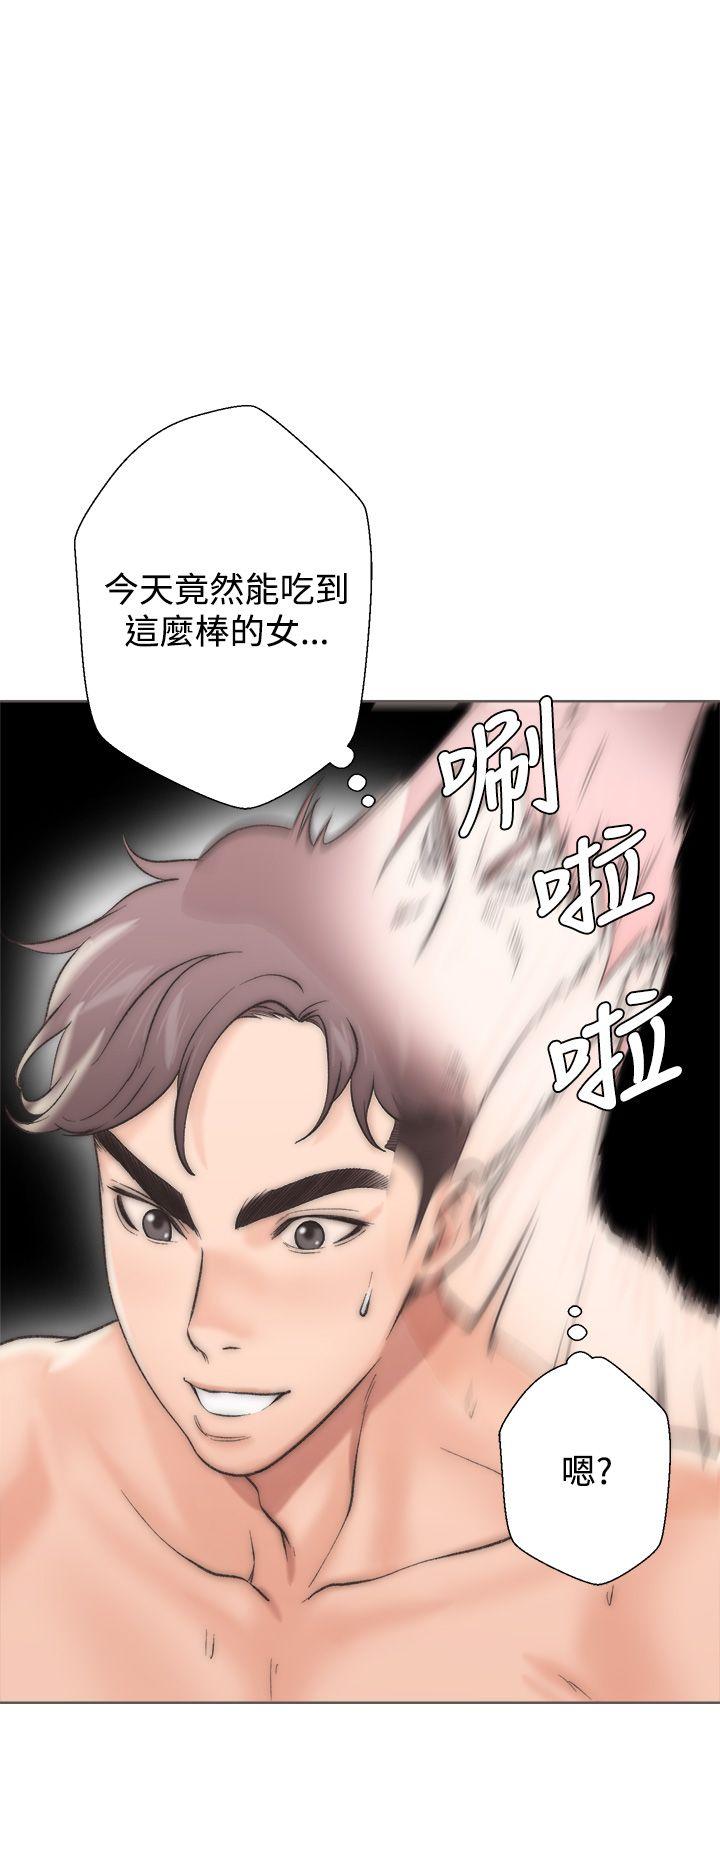 韩国污漫画 青春:逆齡小鮮肉 第2话 28